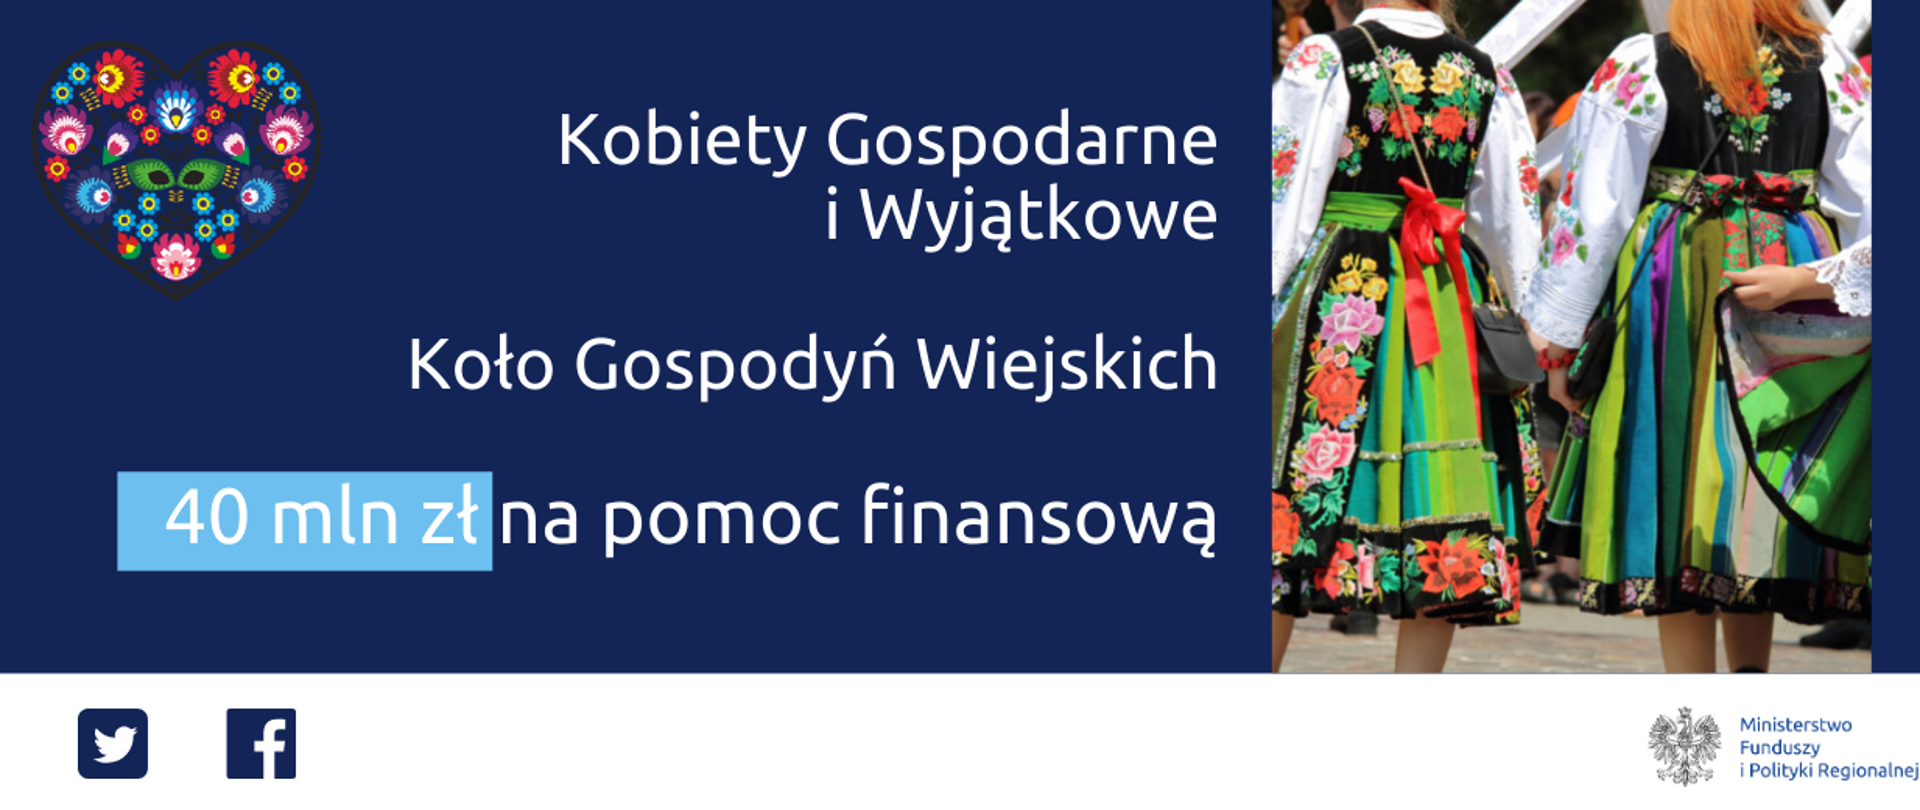 Na grafice napis: "Kobiety Gospodarne i Wyjątkowe, Koło Gospodyń Wiejskich, 40 mln zł na pomoc finansową